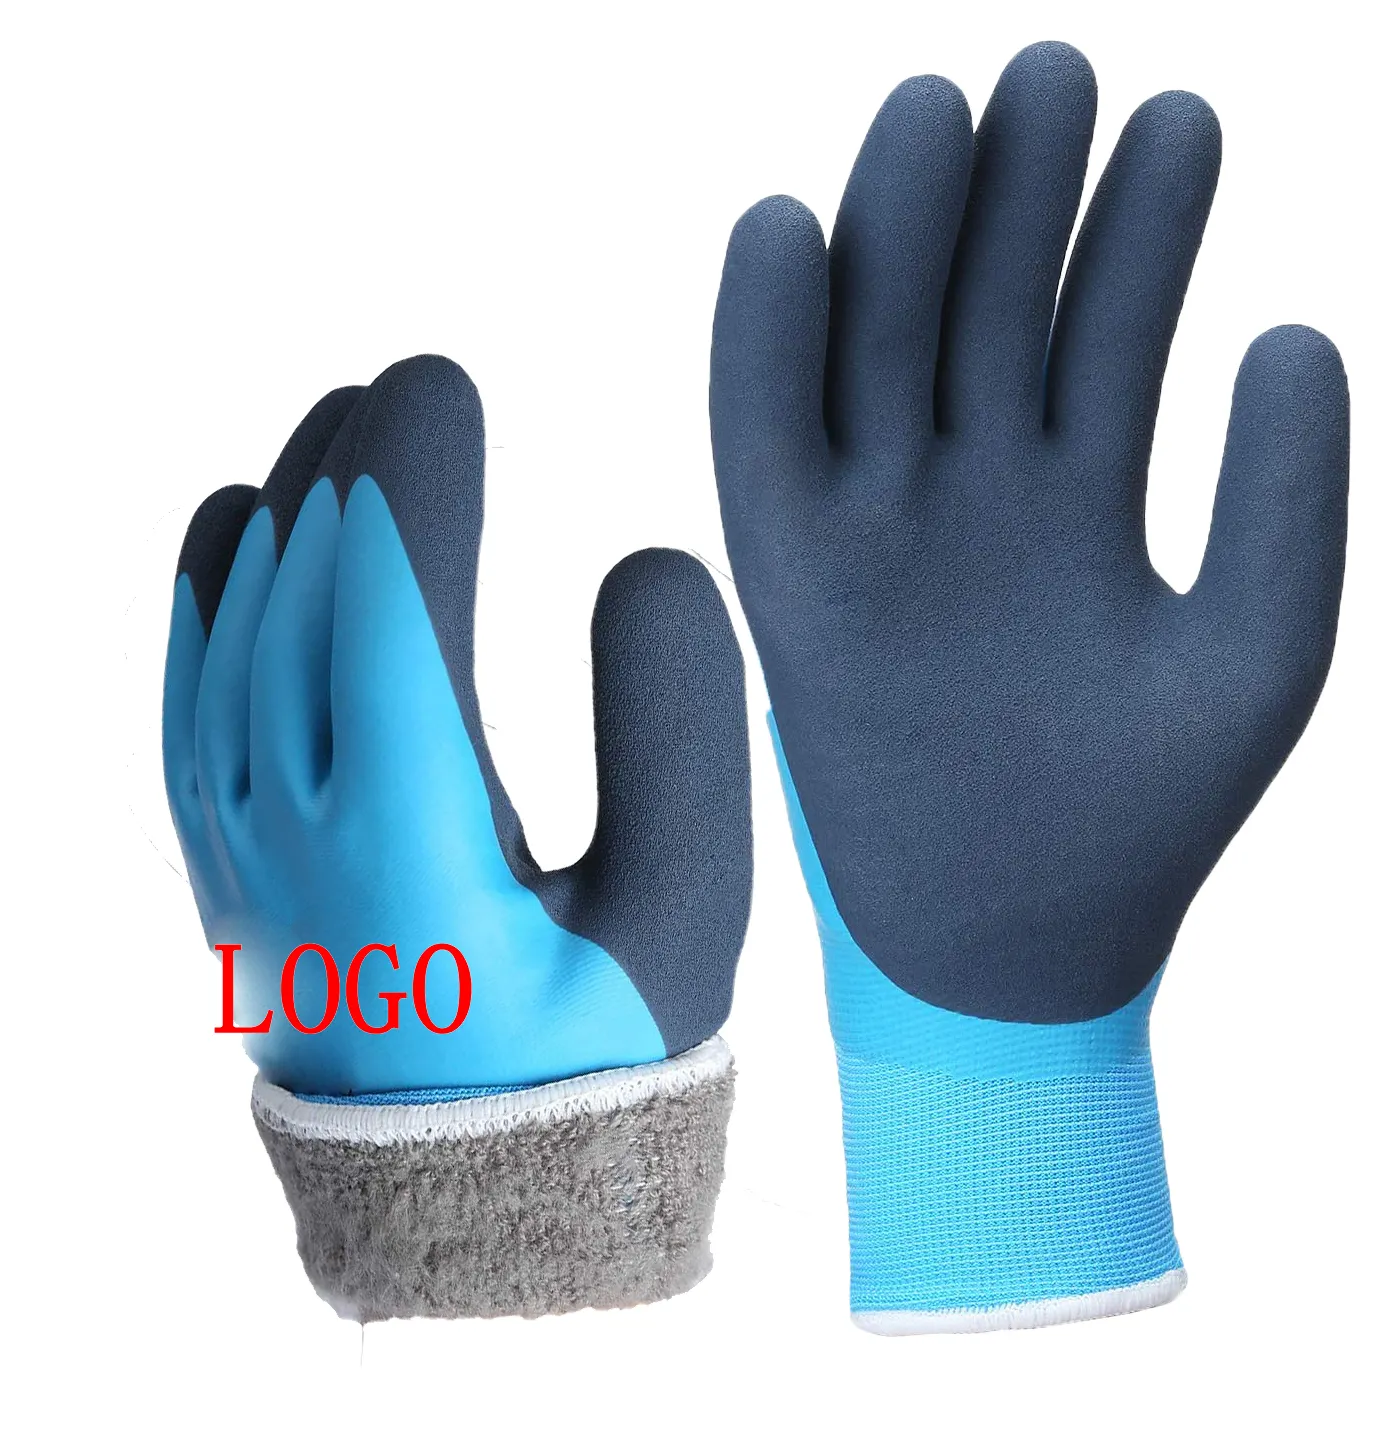 Низкий минимальный заказ, водонепроницаемые теплые зимние перчатки, резиновые перчатки, латексные перчатки с флисовой подкладкой, термозащитные перчатки для строительства, ледяной снег